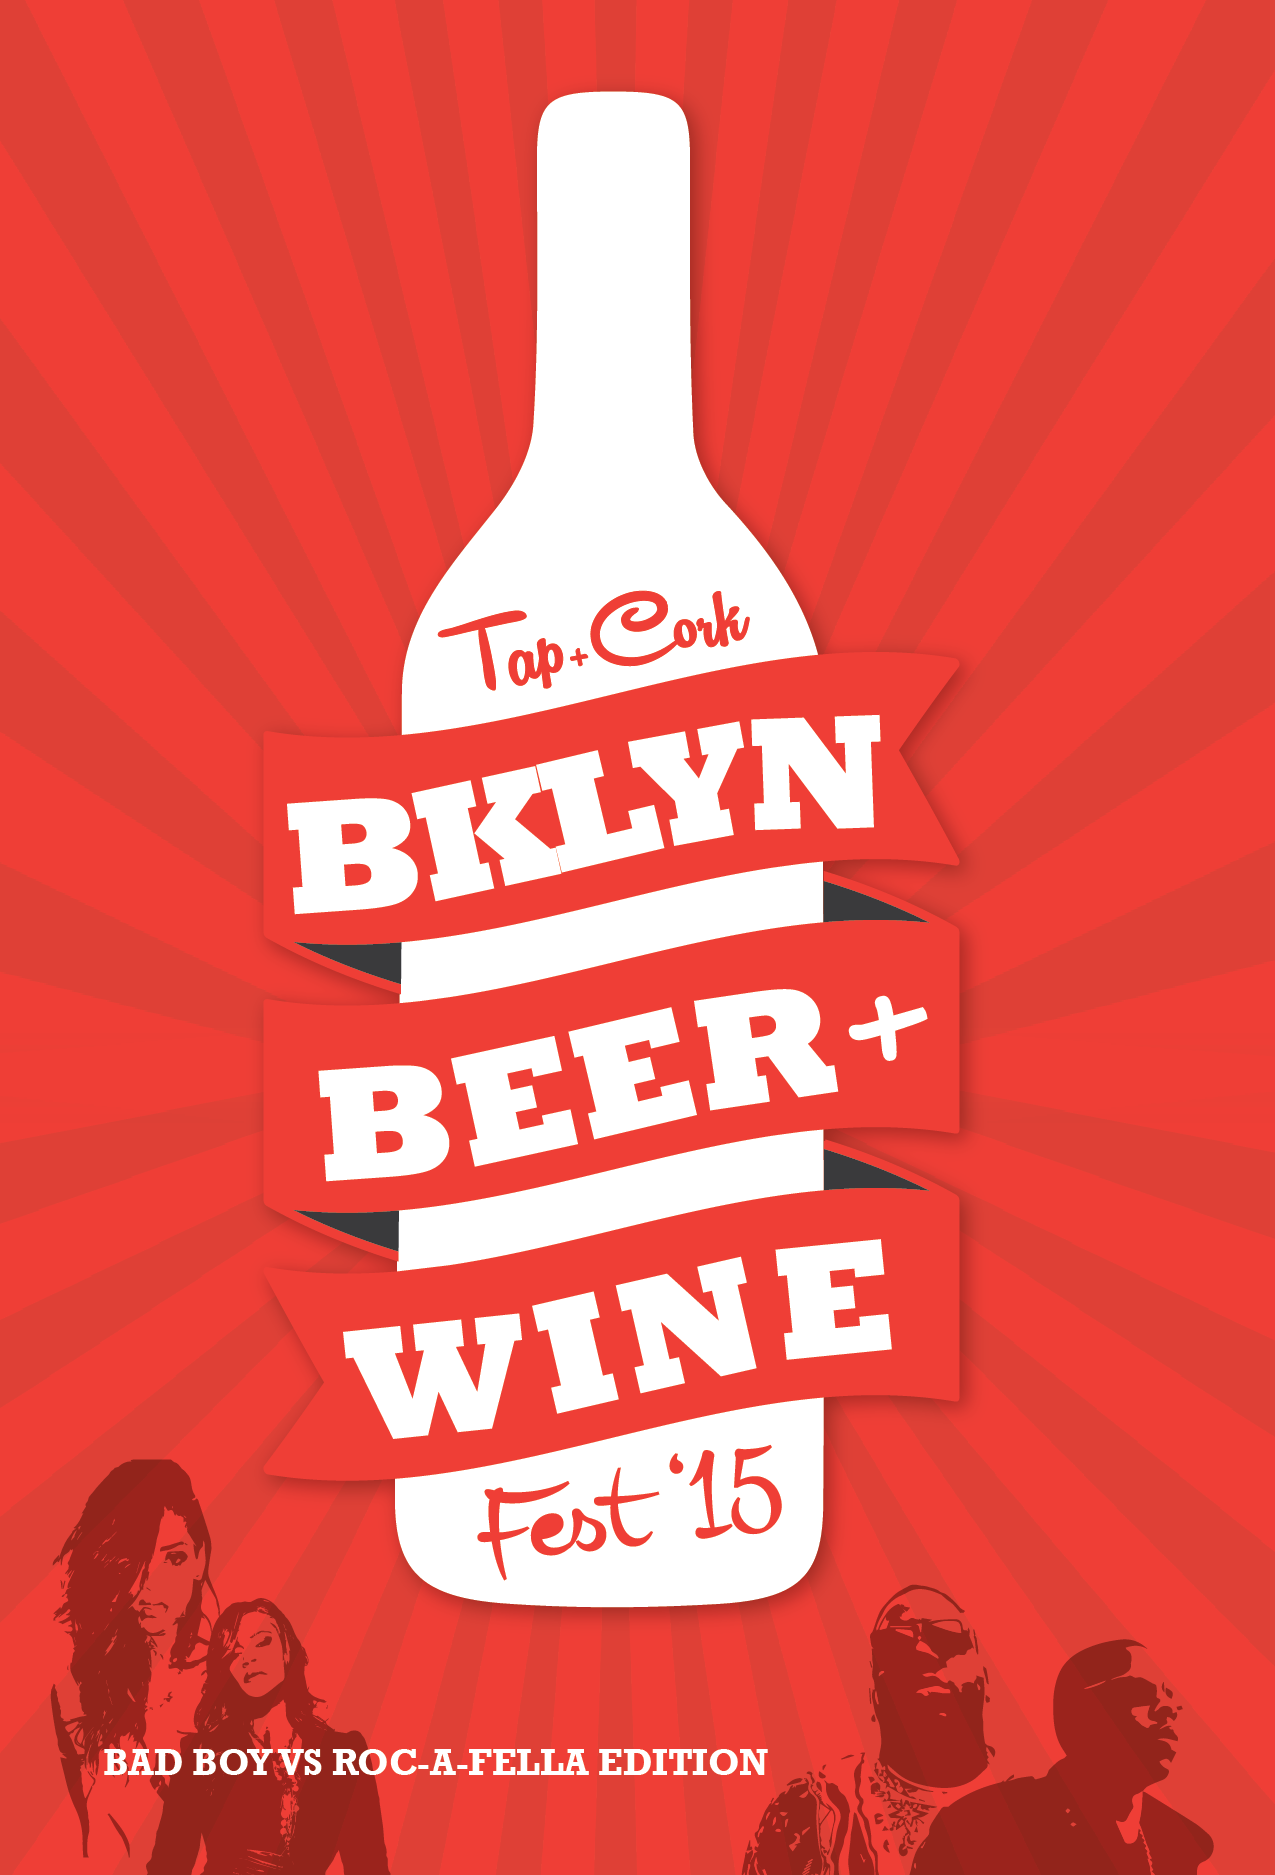 Tap+Cork: Brooklyn Beer & Wine Fest